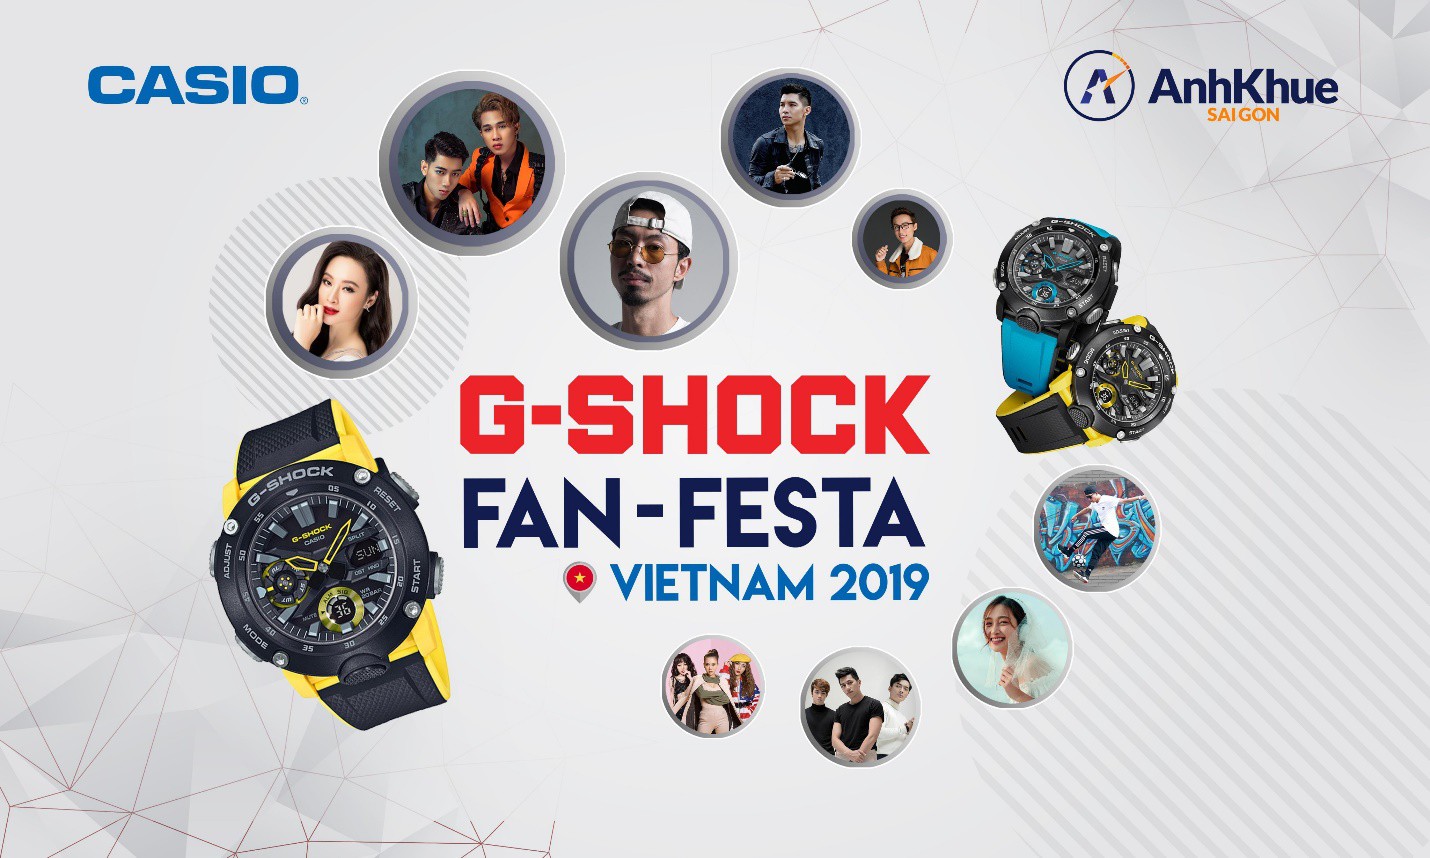 Bạn đã sẵn sàng khuấy động đêm nhạc Casio G-SHOCK Fan Festa cùng Đen Vâu, Jack và K-ICM chưa? - Ảnh 1.